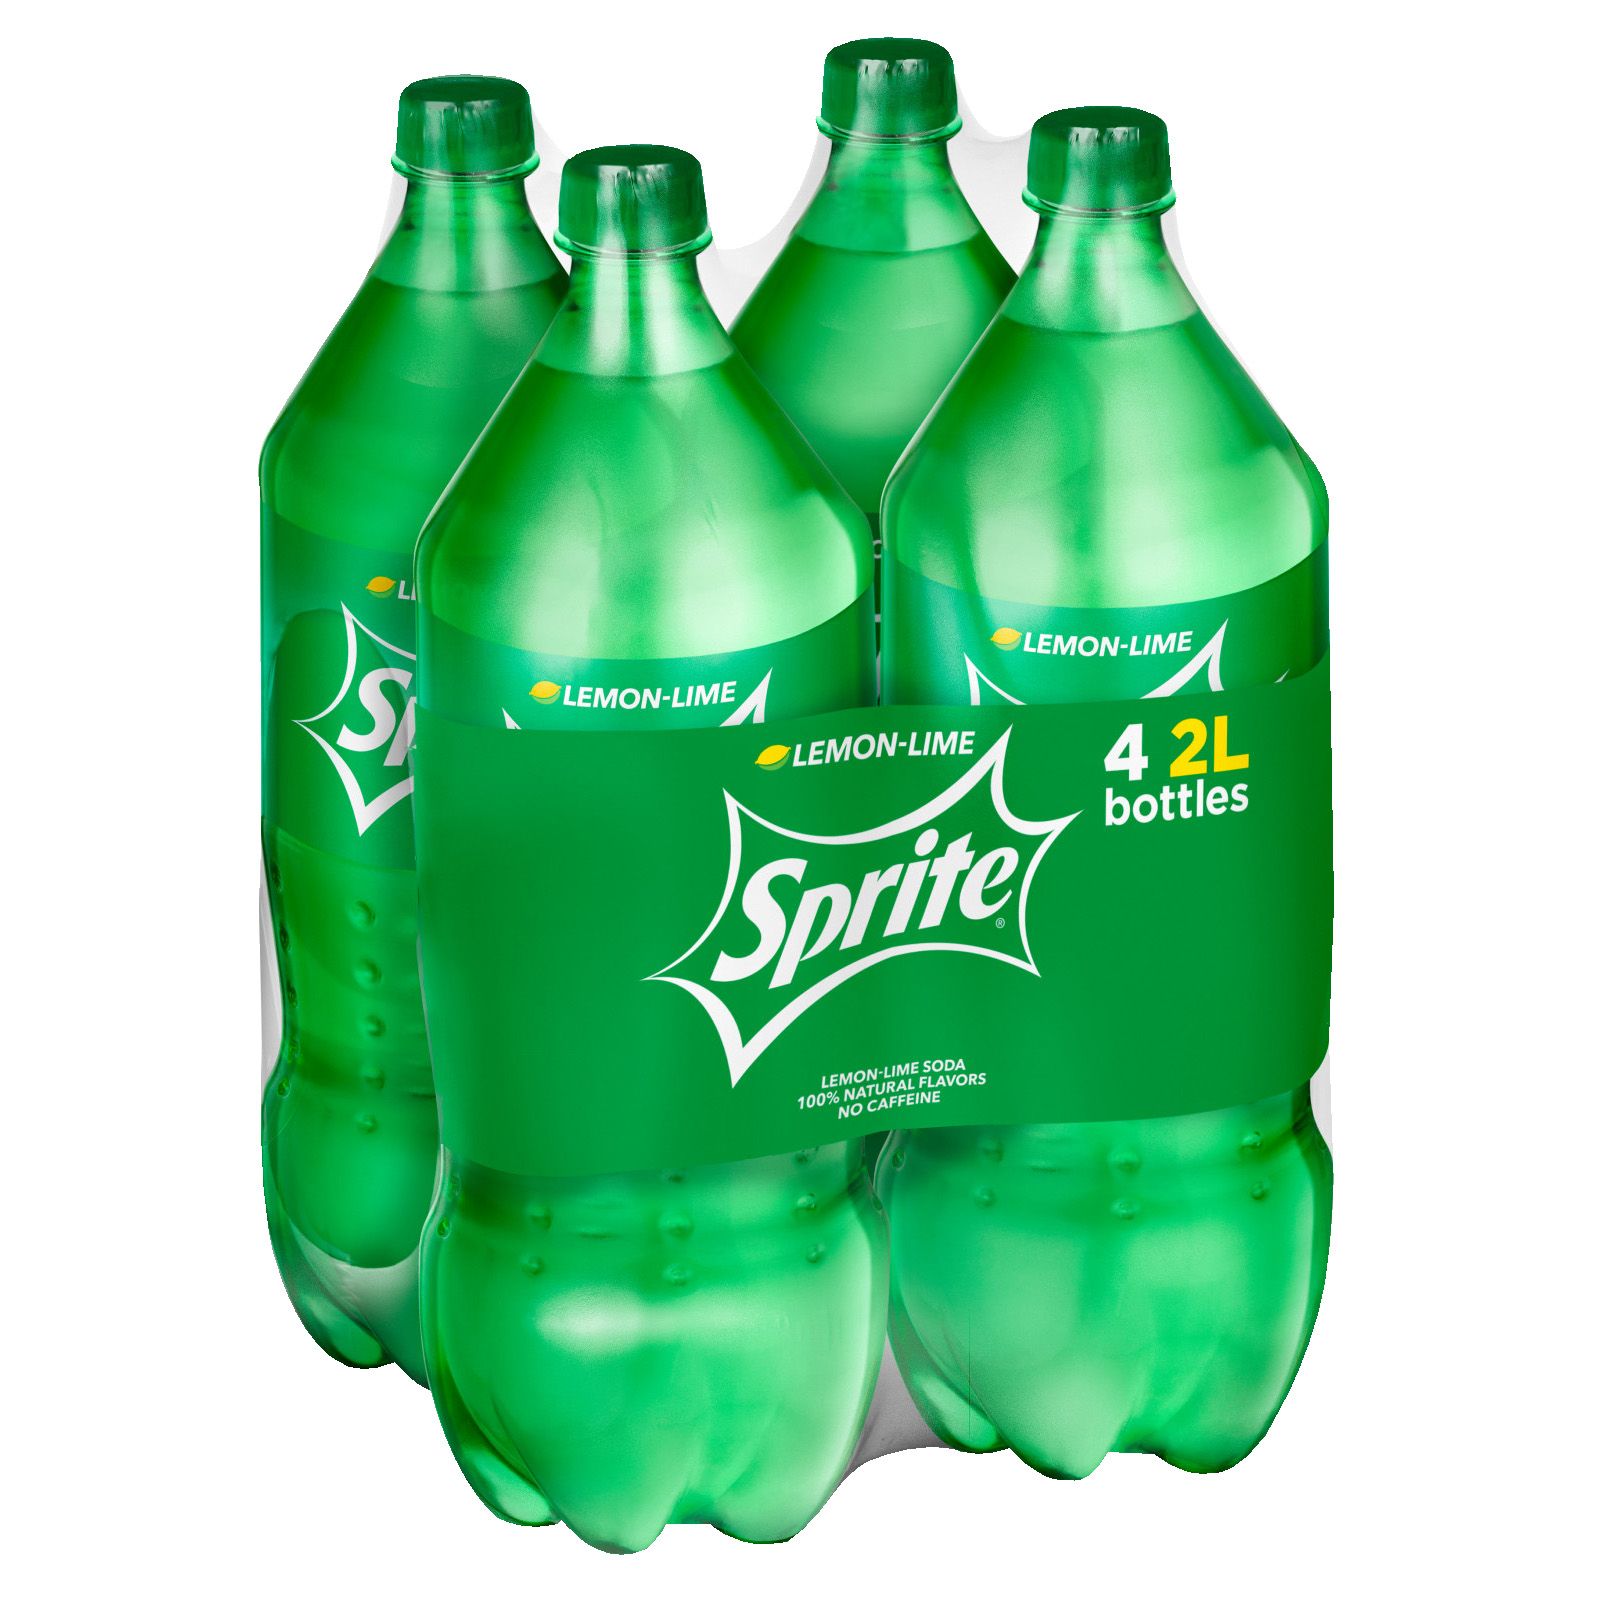 Sprite Soda Regular, 2 L Bottle